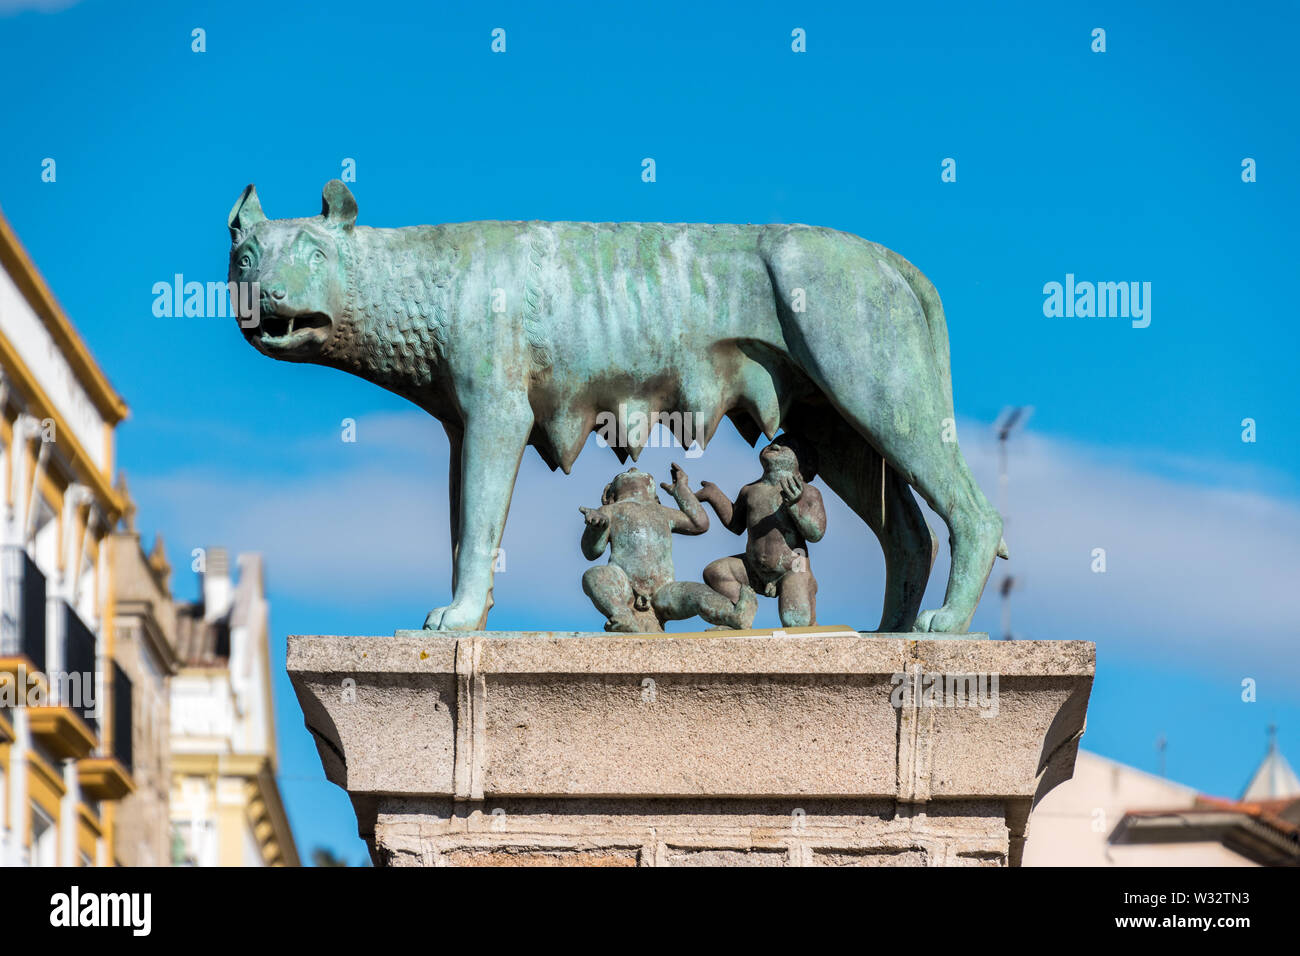 Eine Statue von Romulus und Remus aus der römischen Mythologie in Merida, Spanien Stockfoto